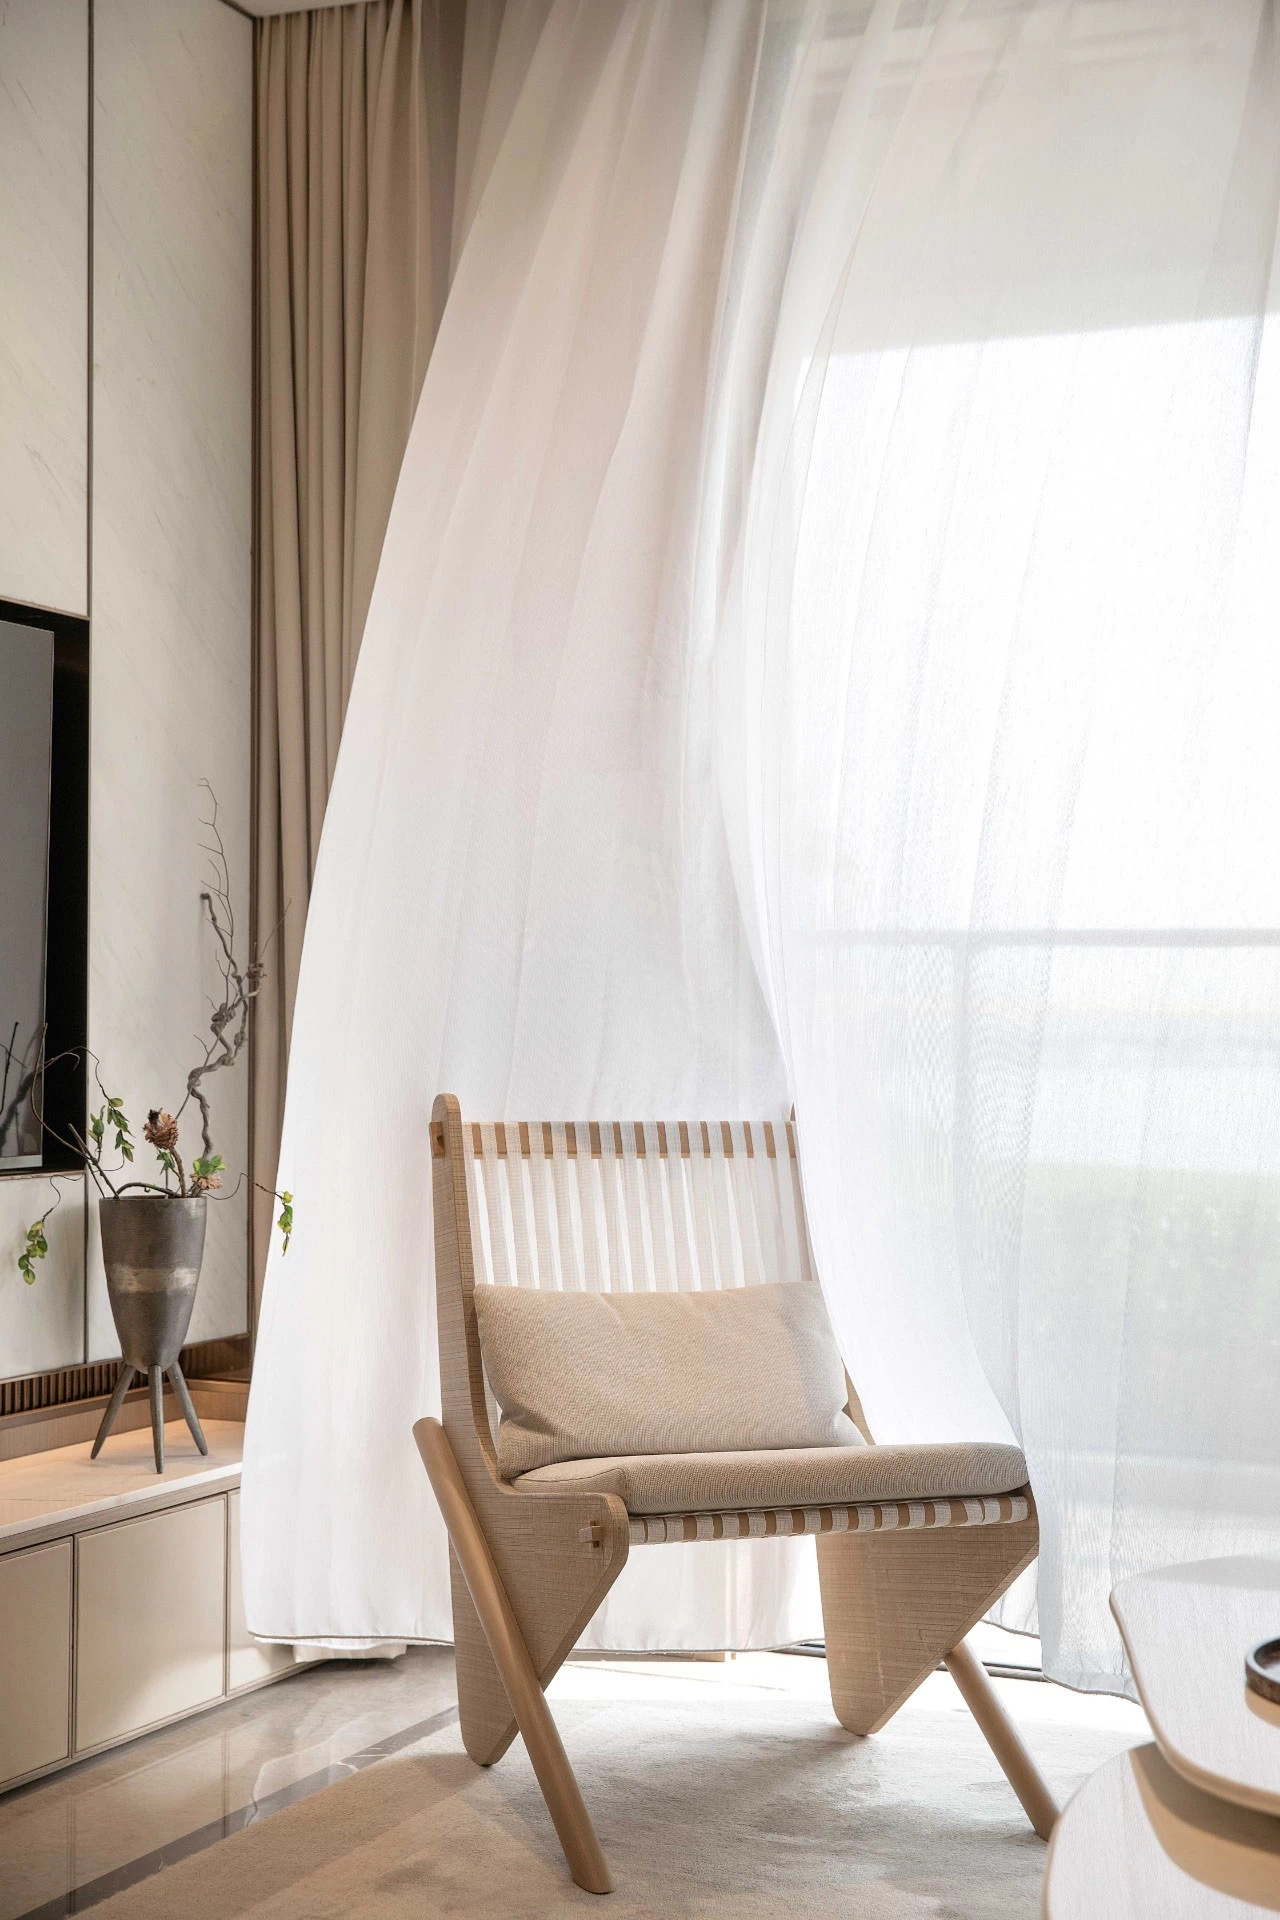 日式原木风格室内家装案例效果图-客厅窗帘